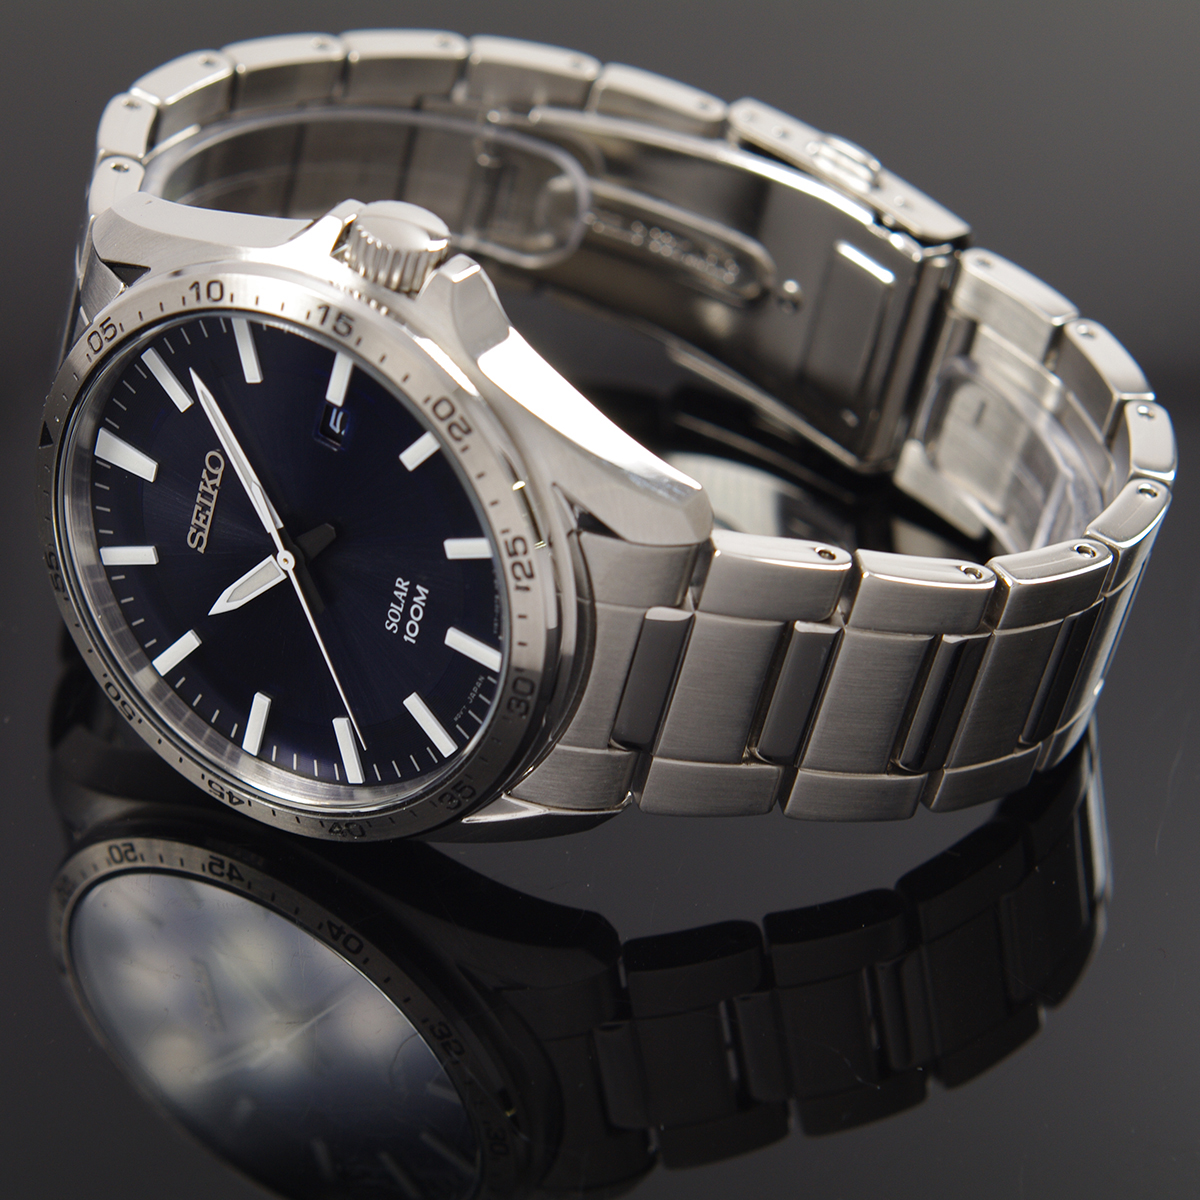 【楽天市場】セイコー SEIKO 腕時計 ソーラー 100M防水 ネイビー文字盤 海外モデル SNE483P1 メンズ [逆輸入品]：アッキー